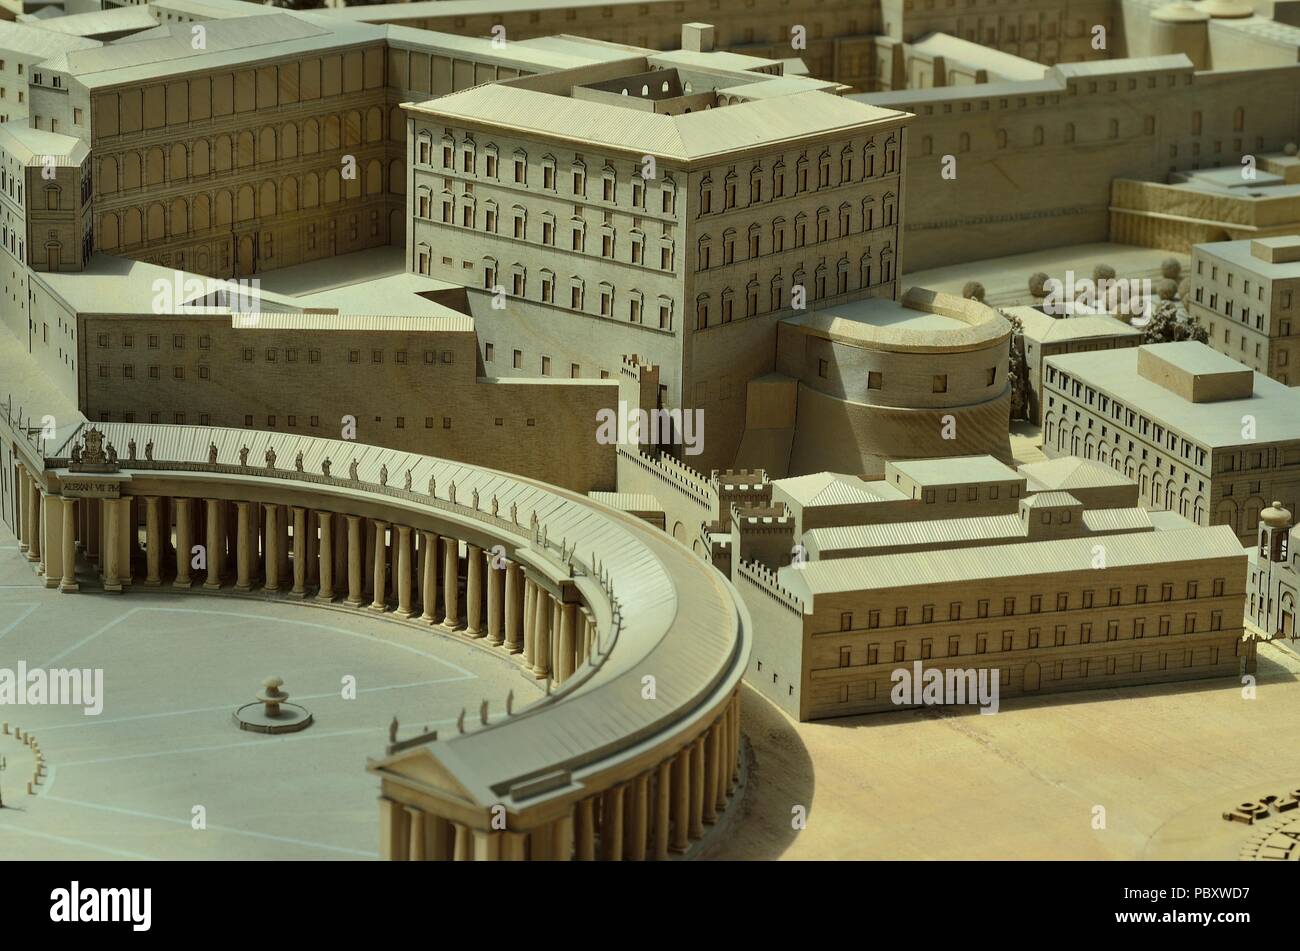 Maquette en bois (miniature) de la Cité du Vatican exposée dans les musées du Vatican, Cité du Vatican, Rome, Italie, Europe Banque D'Images